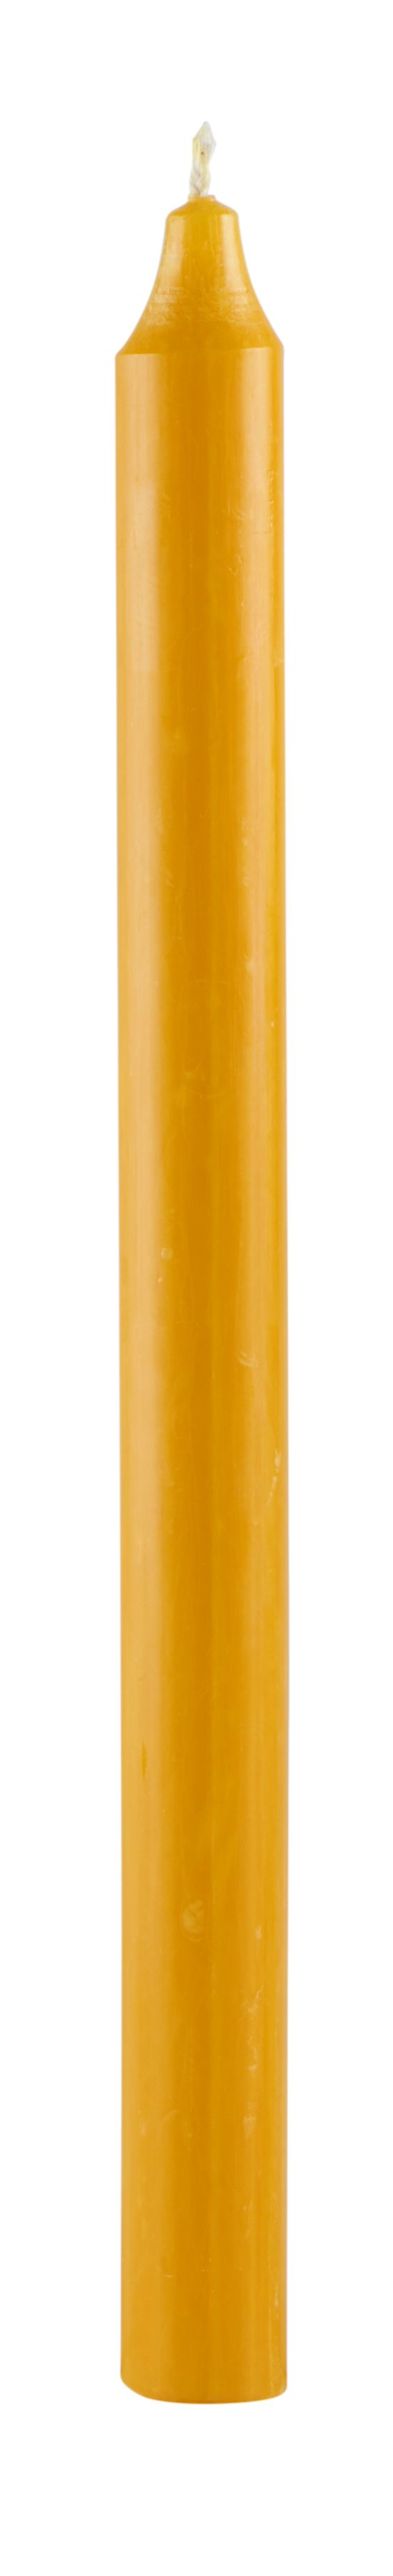 Rustik stagelys, Okker gul, 29 cm.